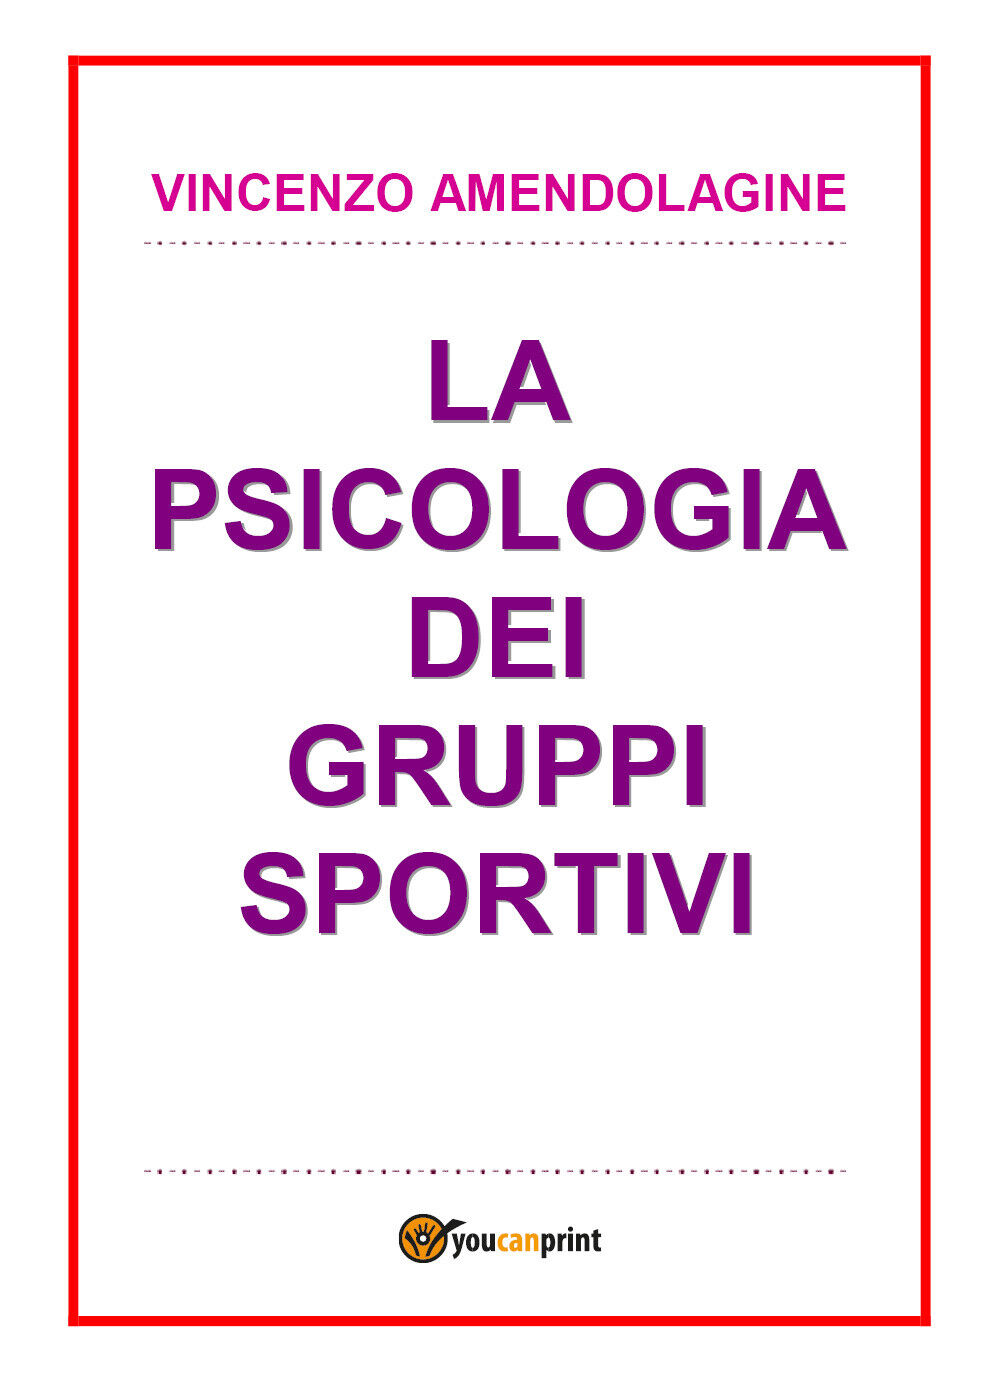 Psicologia dei gruppi sportivi - Vincenzo Amendolagine,  2017,  Youcanprint